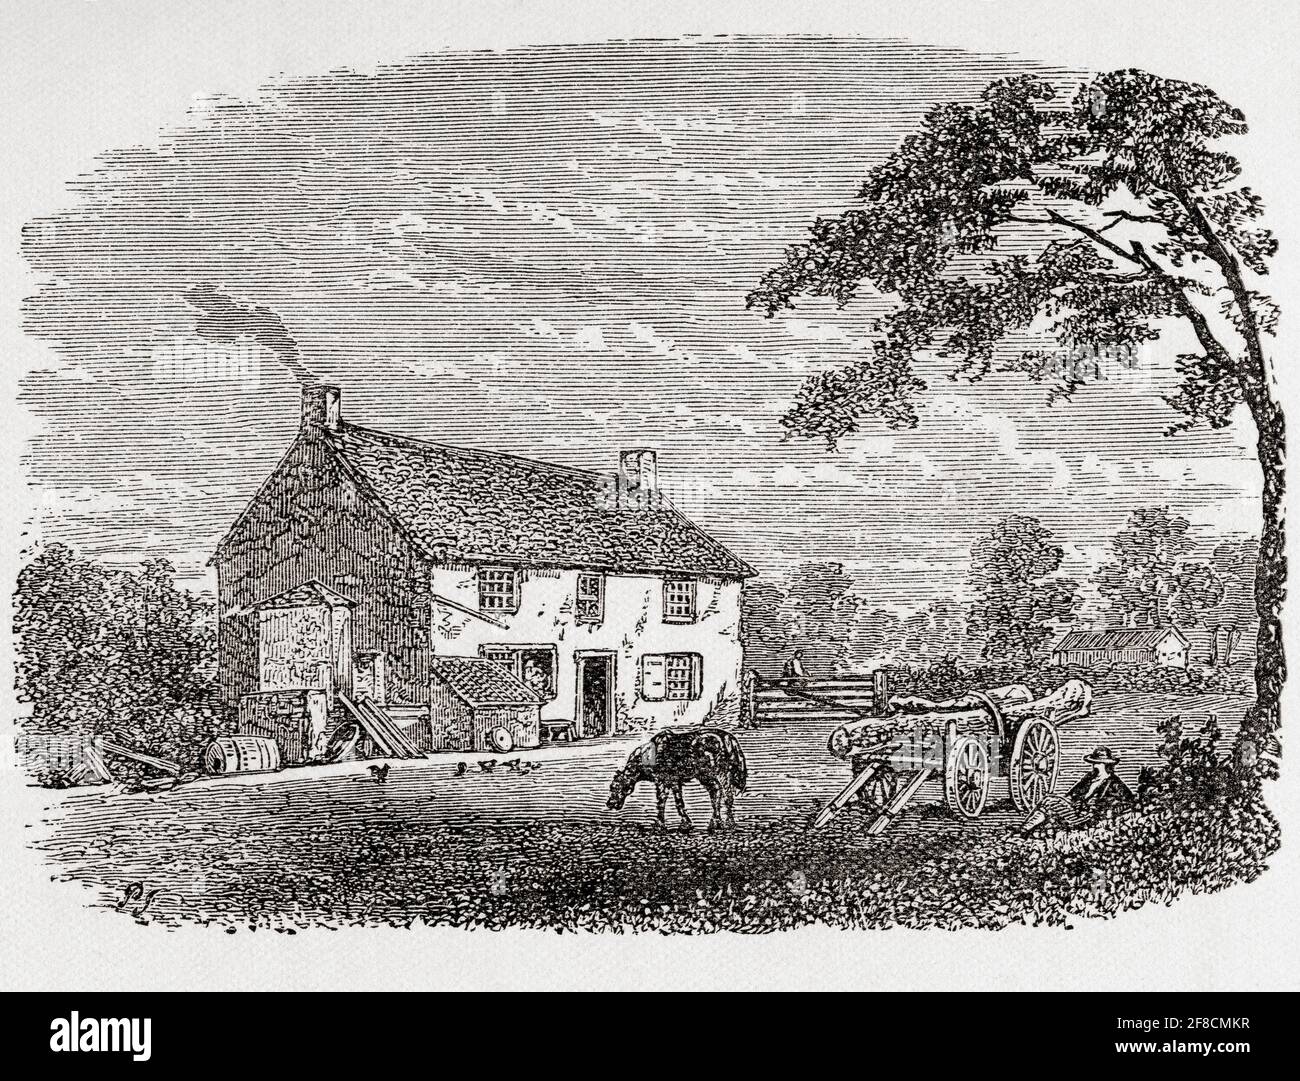 Lieu de naissance de George Stephenson. Une maison de campagne en pierre du XVIIIe siècle de George Stephenson, Wylam, Northumberland, Angleterre, vu ici au XIXe siècle. De Great Engineers, publié c.1890 Banque D'Images